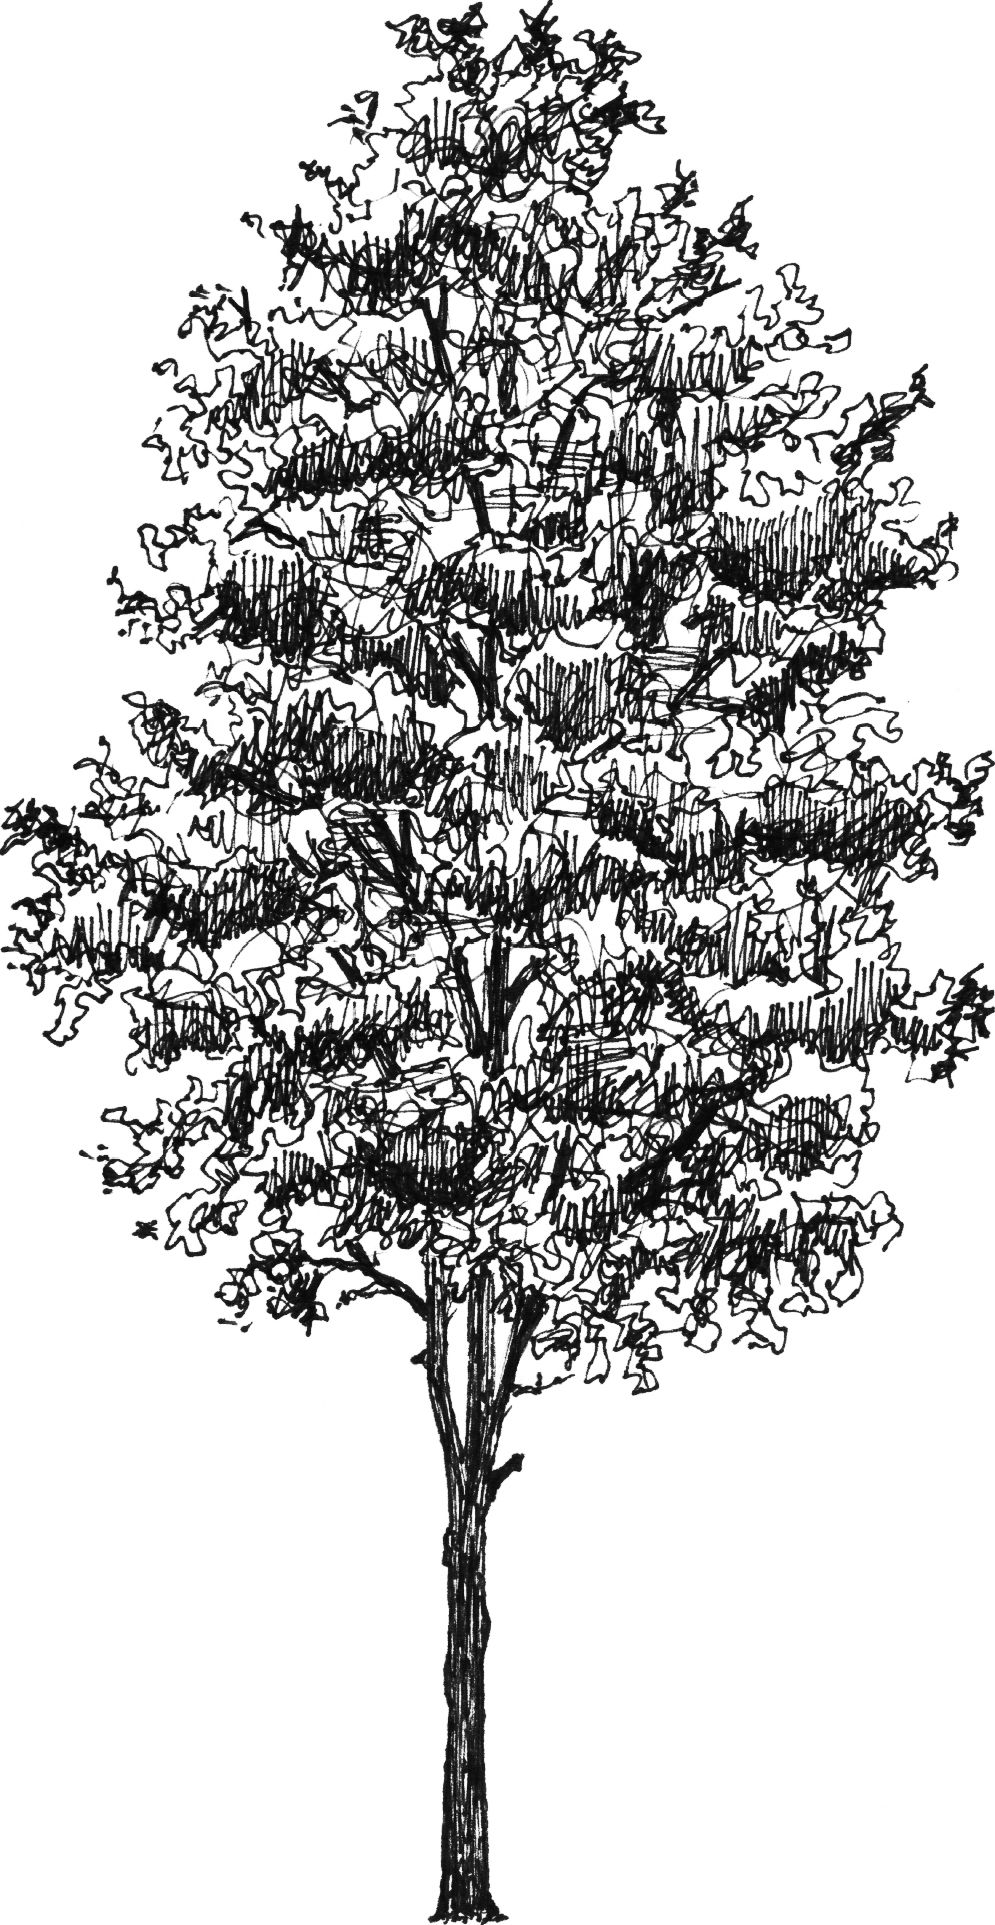 Quercus robur - Arboretum - Baltics - Drawing by Camillo Visini